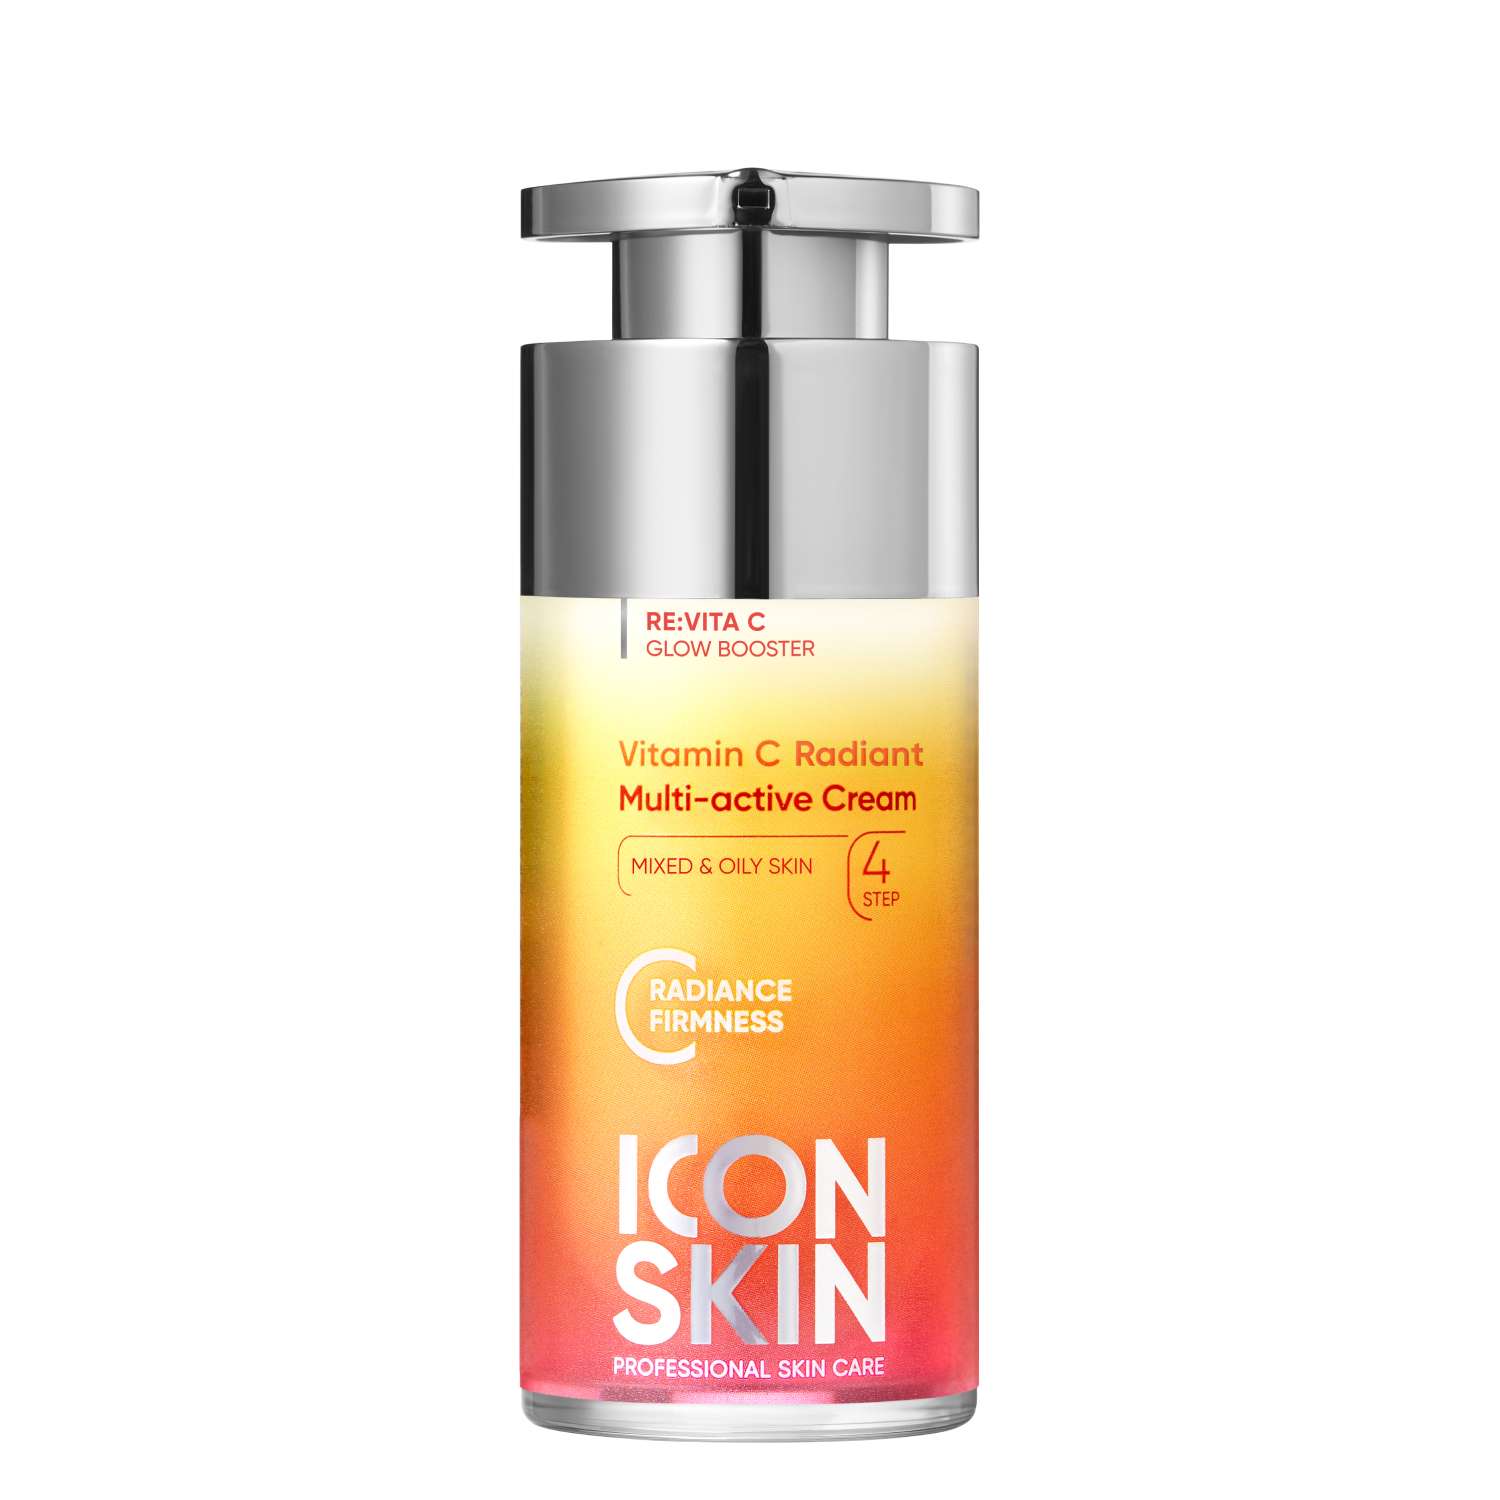 Мультиактивный крем ICON SKIN Vitamin C Radiant для комбинированной и жирной кожи - фото 1